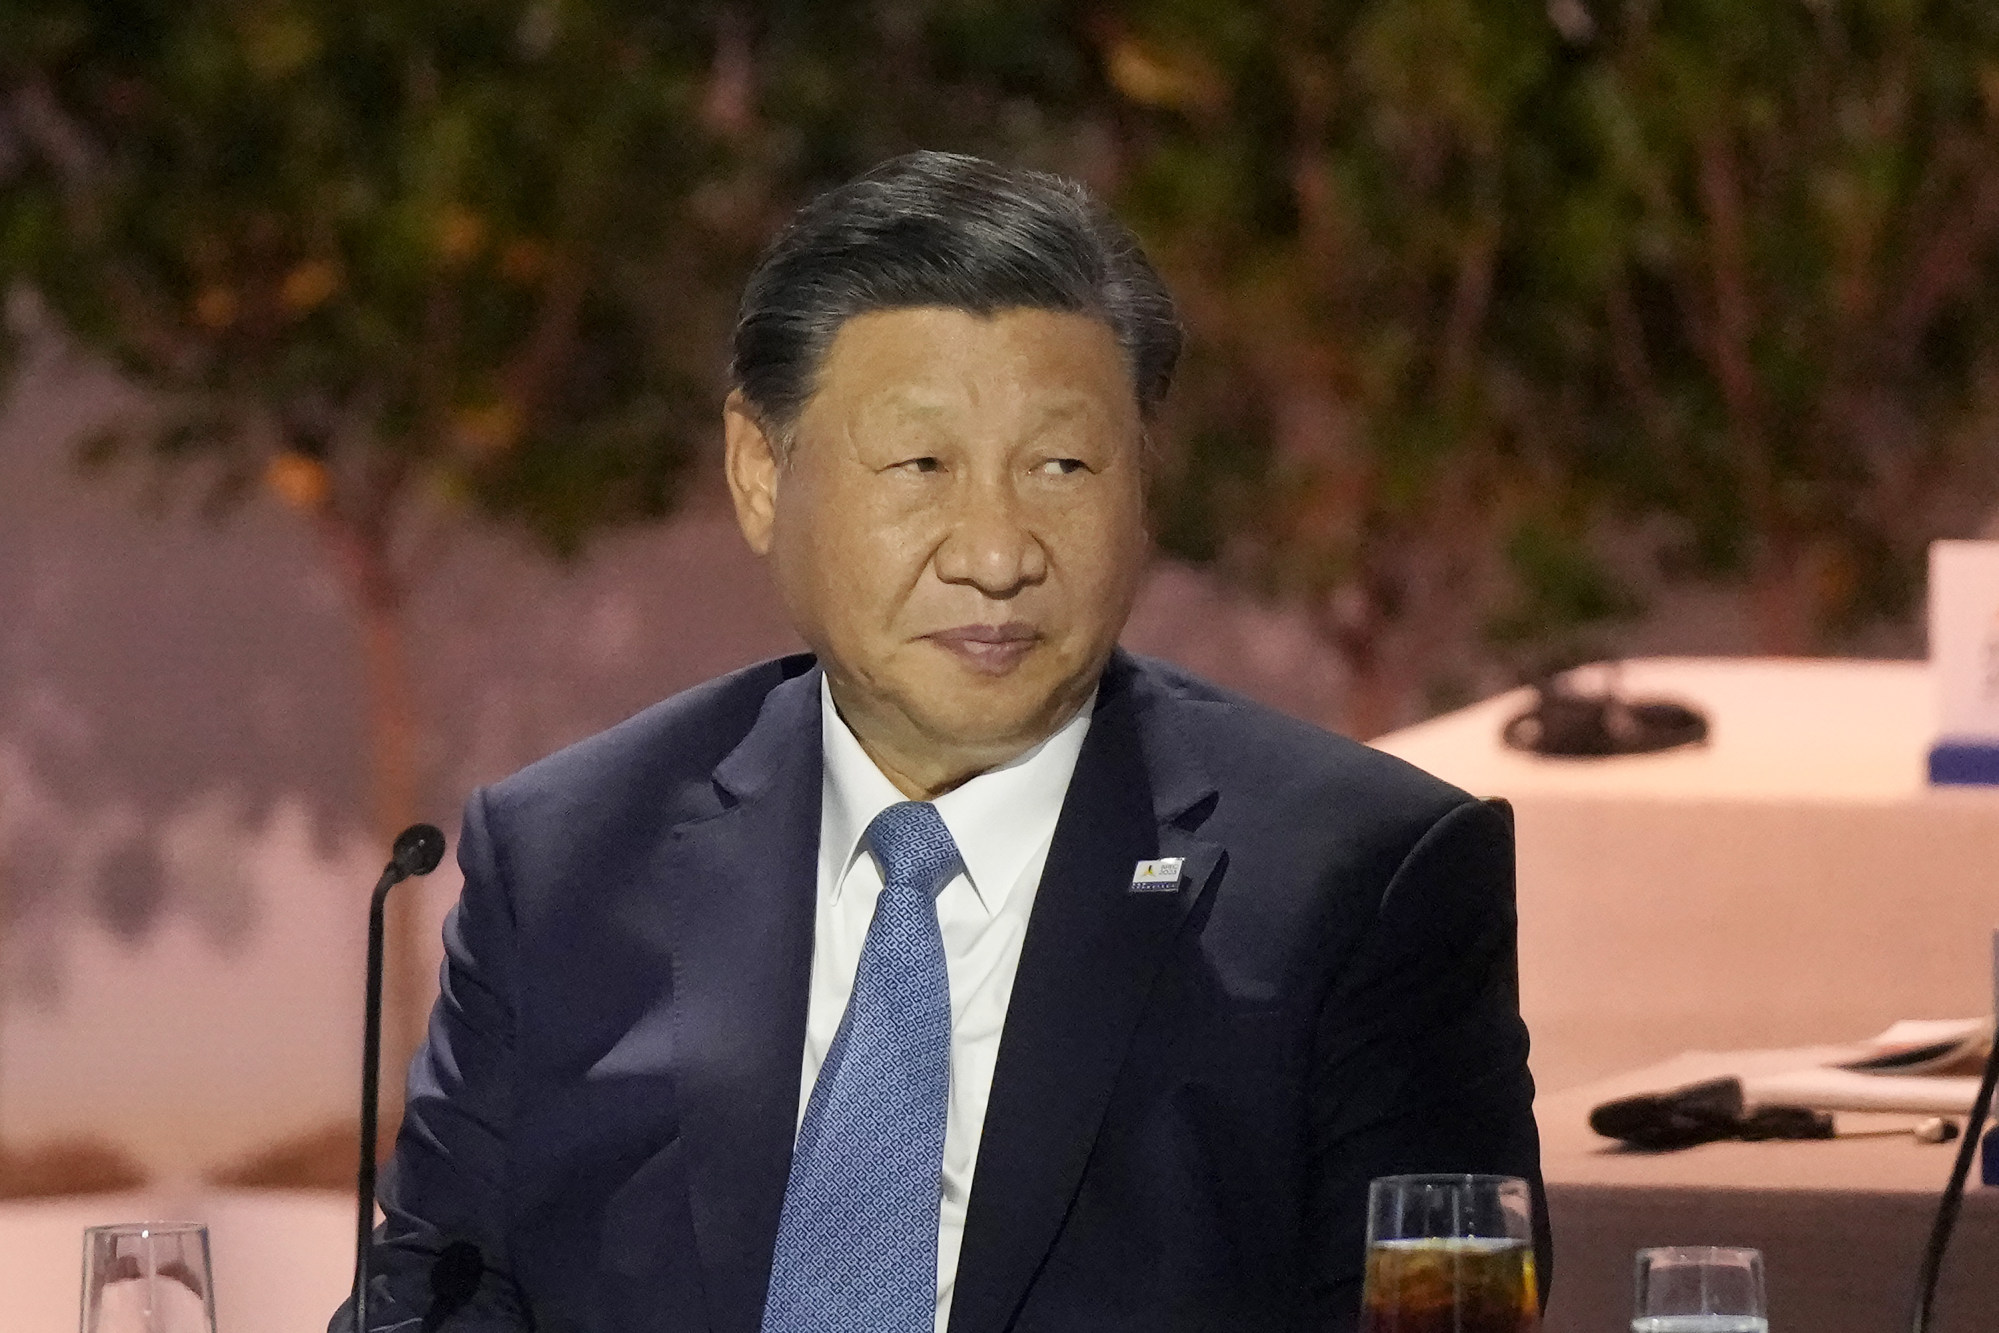 El magnate de los casinos encarcelado de Macao, Alvin Chau, pide indulgencia a Xi Jinping